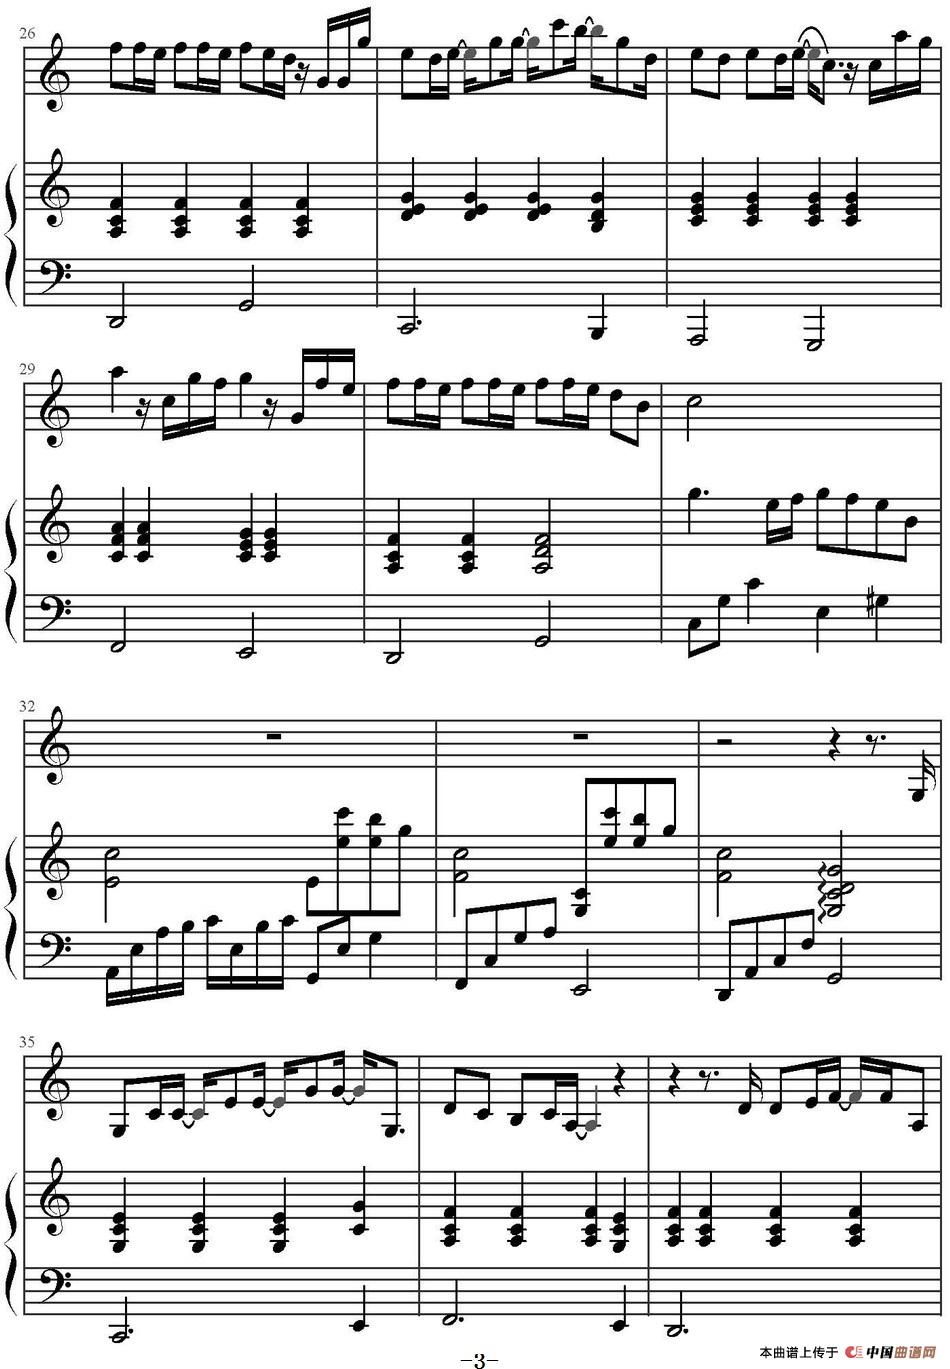 《洋葱》钢琴曲谱图分享